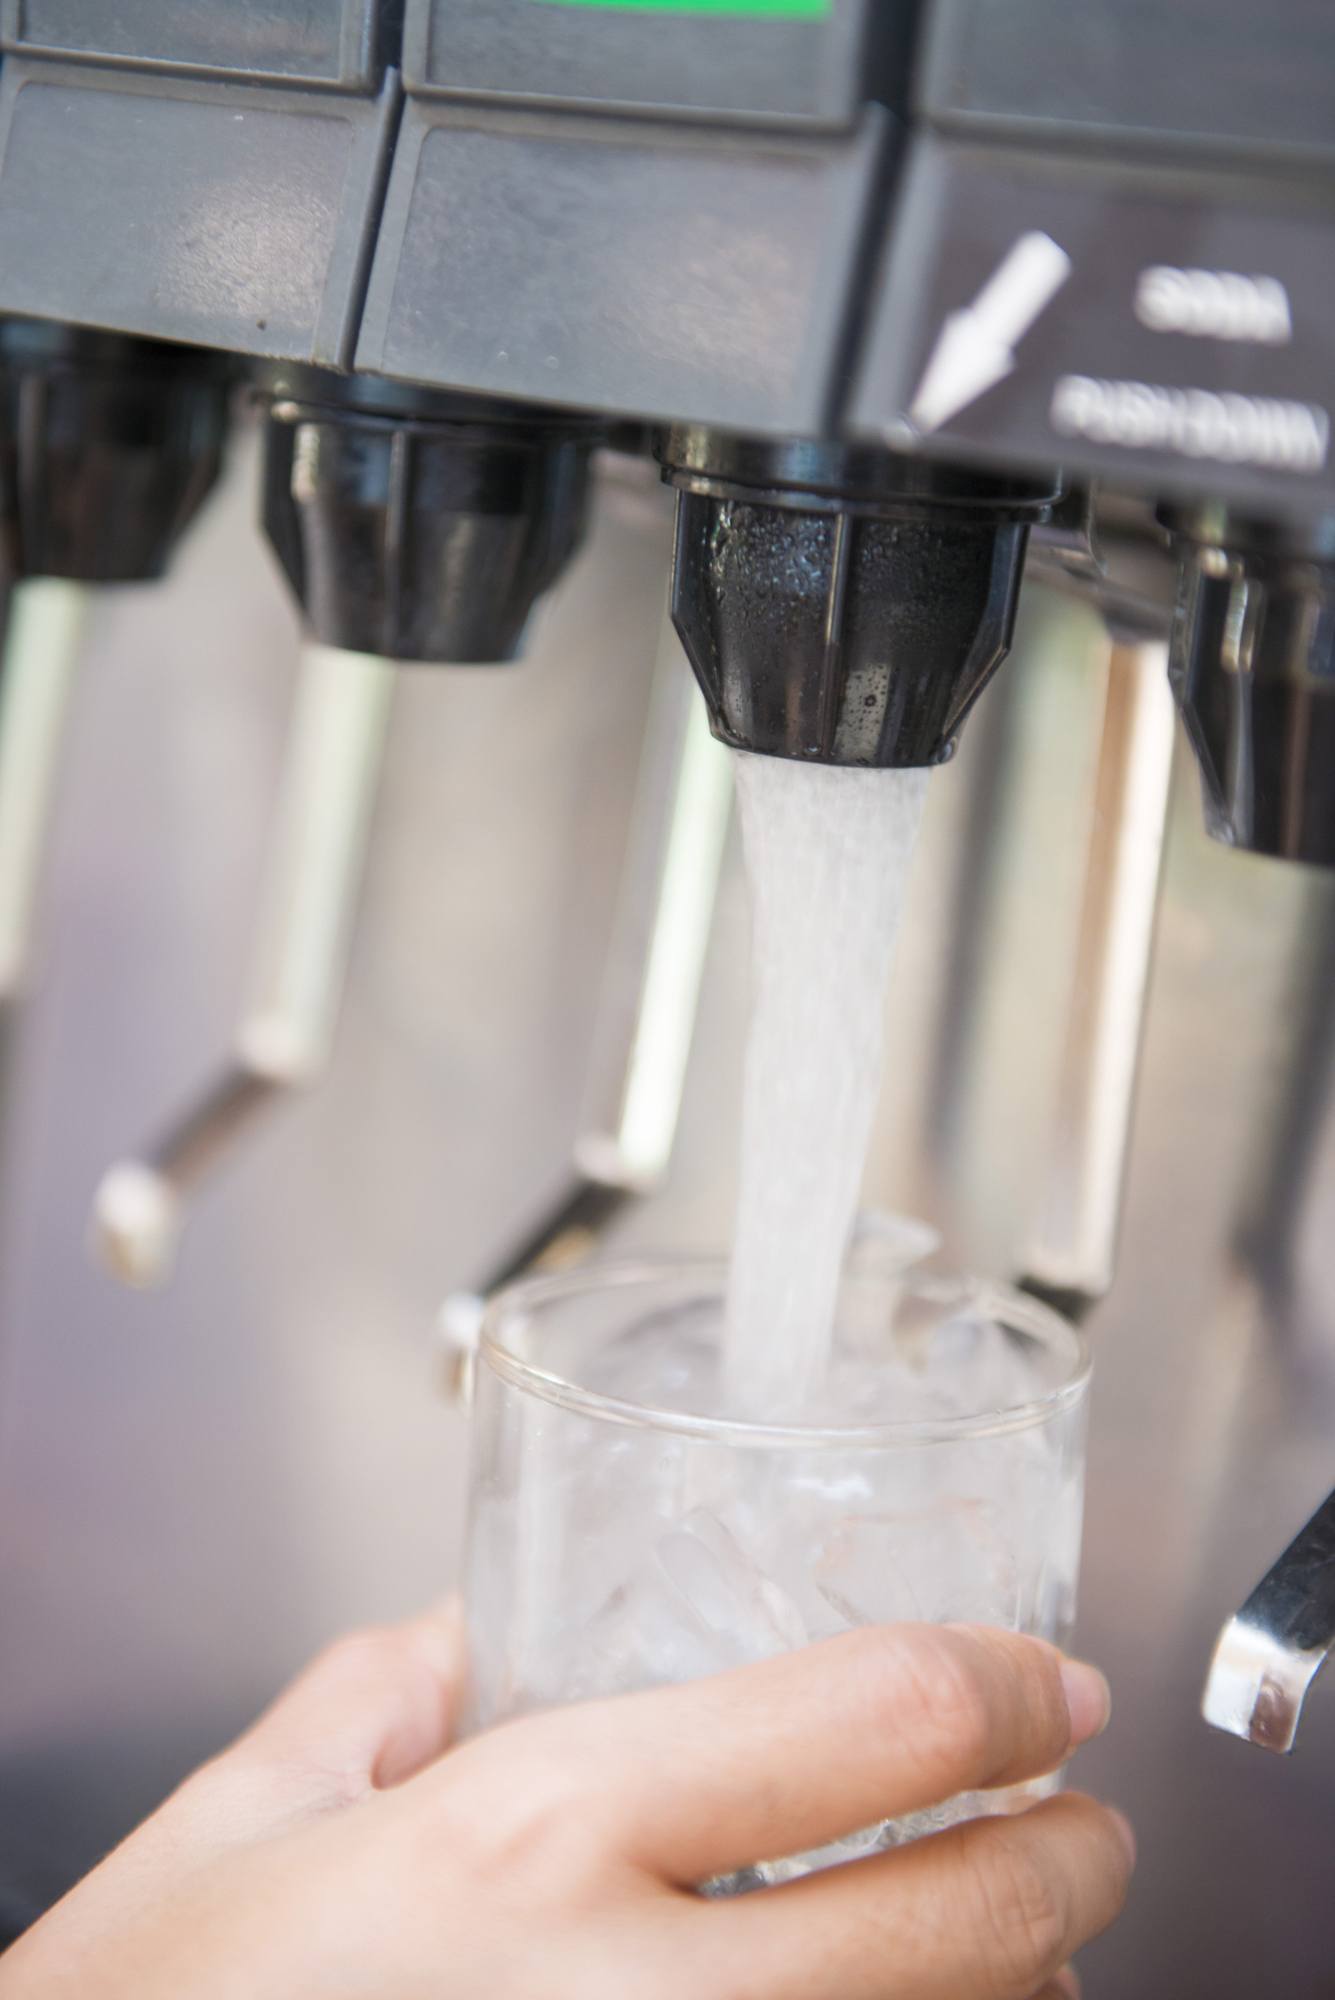 Pressing soft drink from machine, beverage